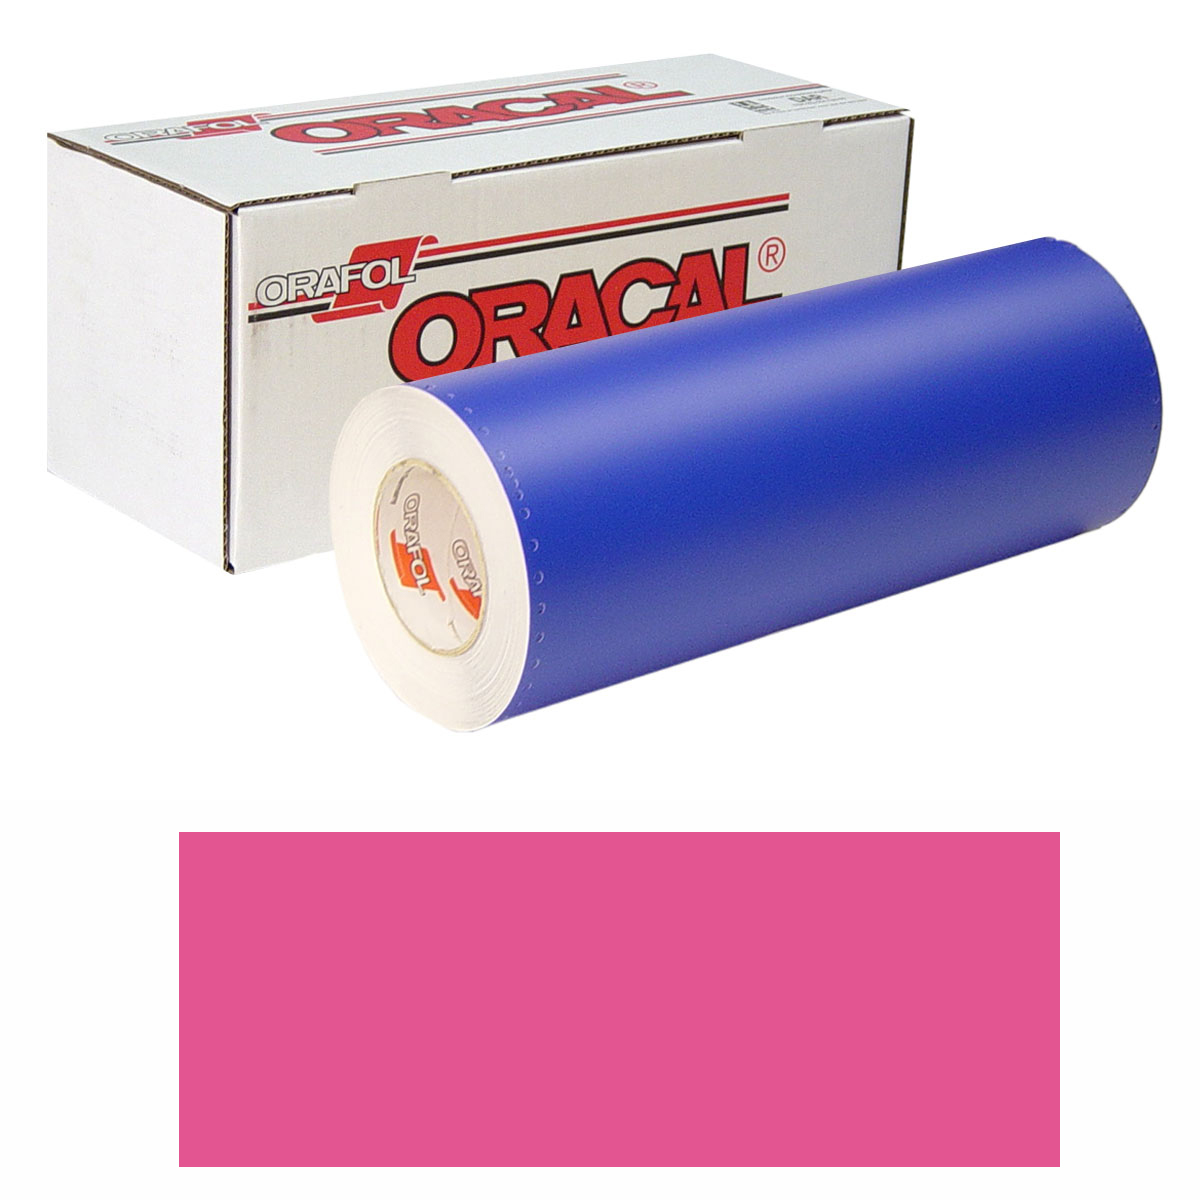 ORACAL 8300 Unp 48in X 10yd 041 Pink